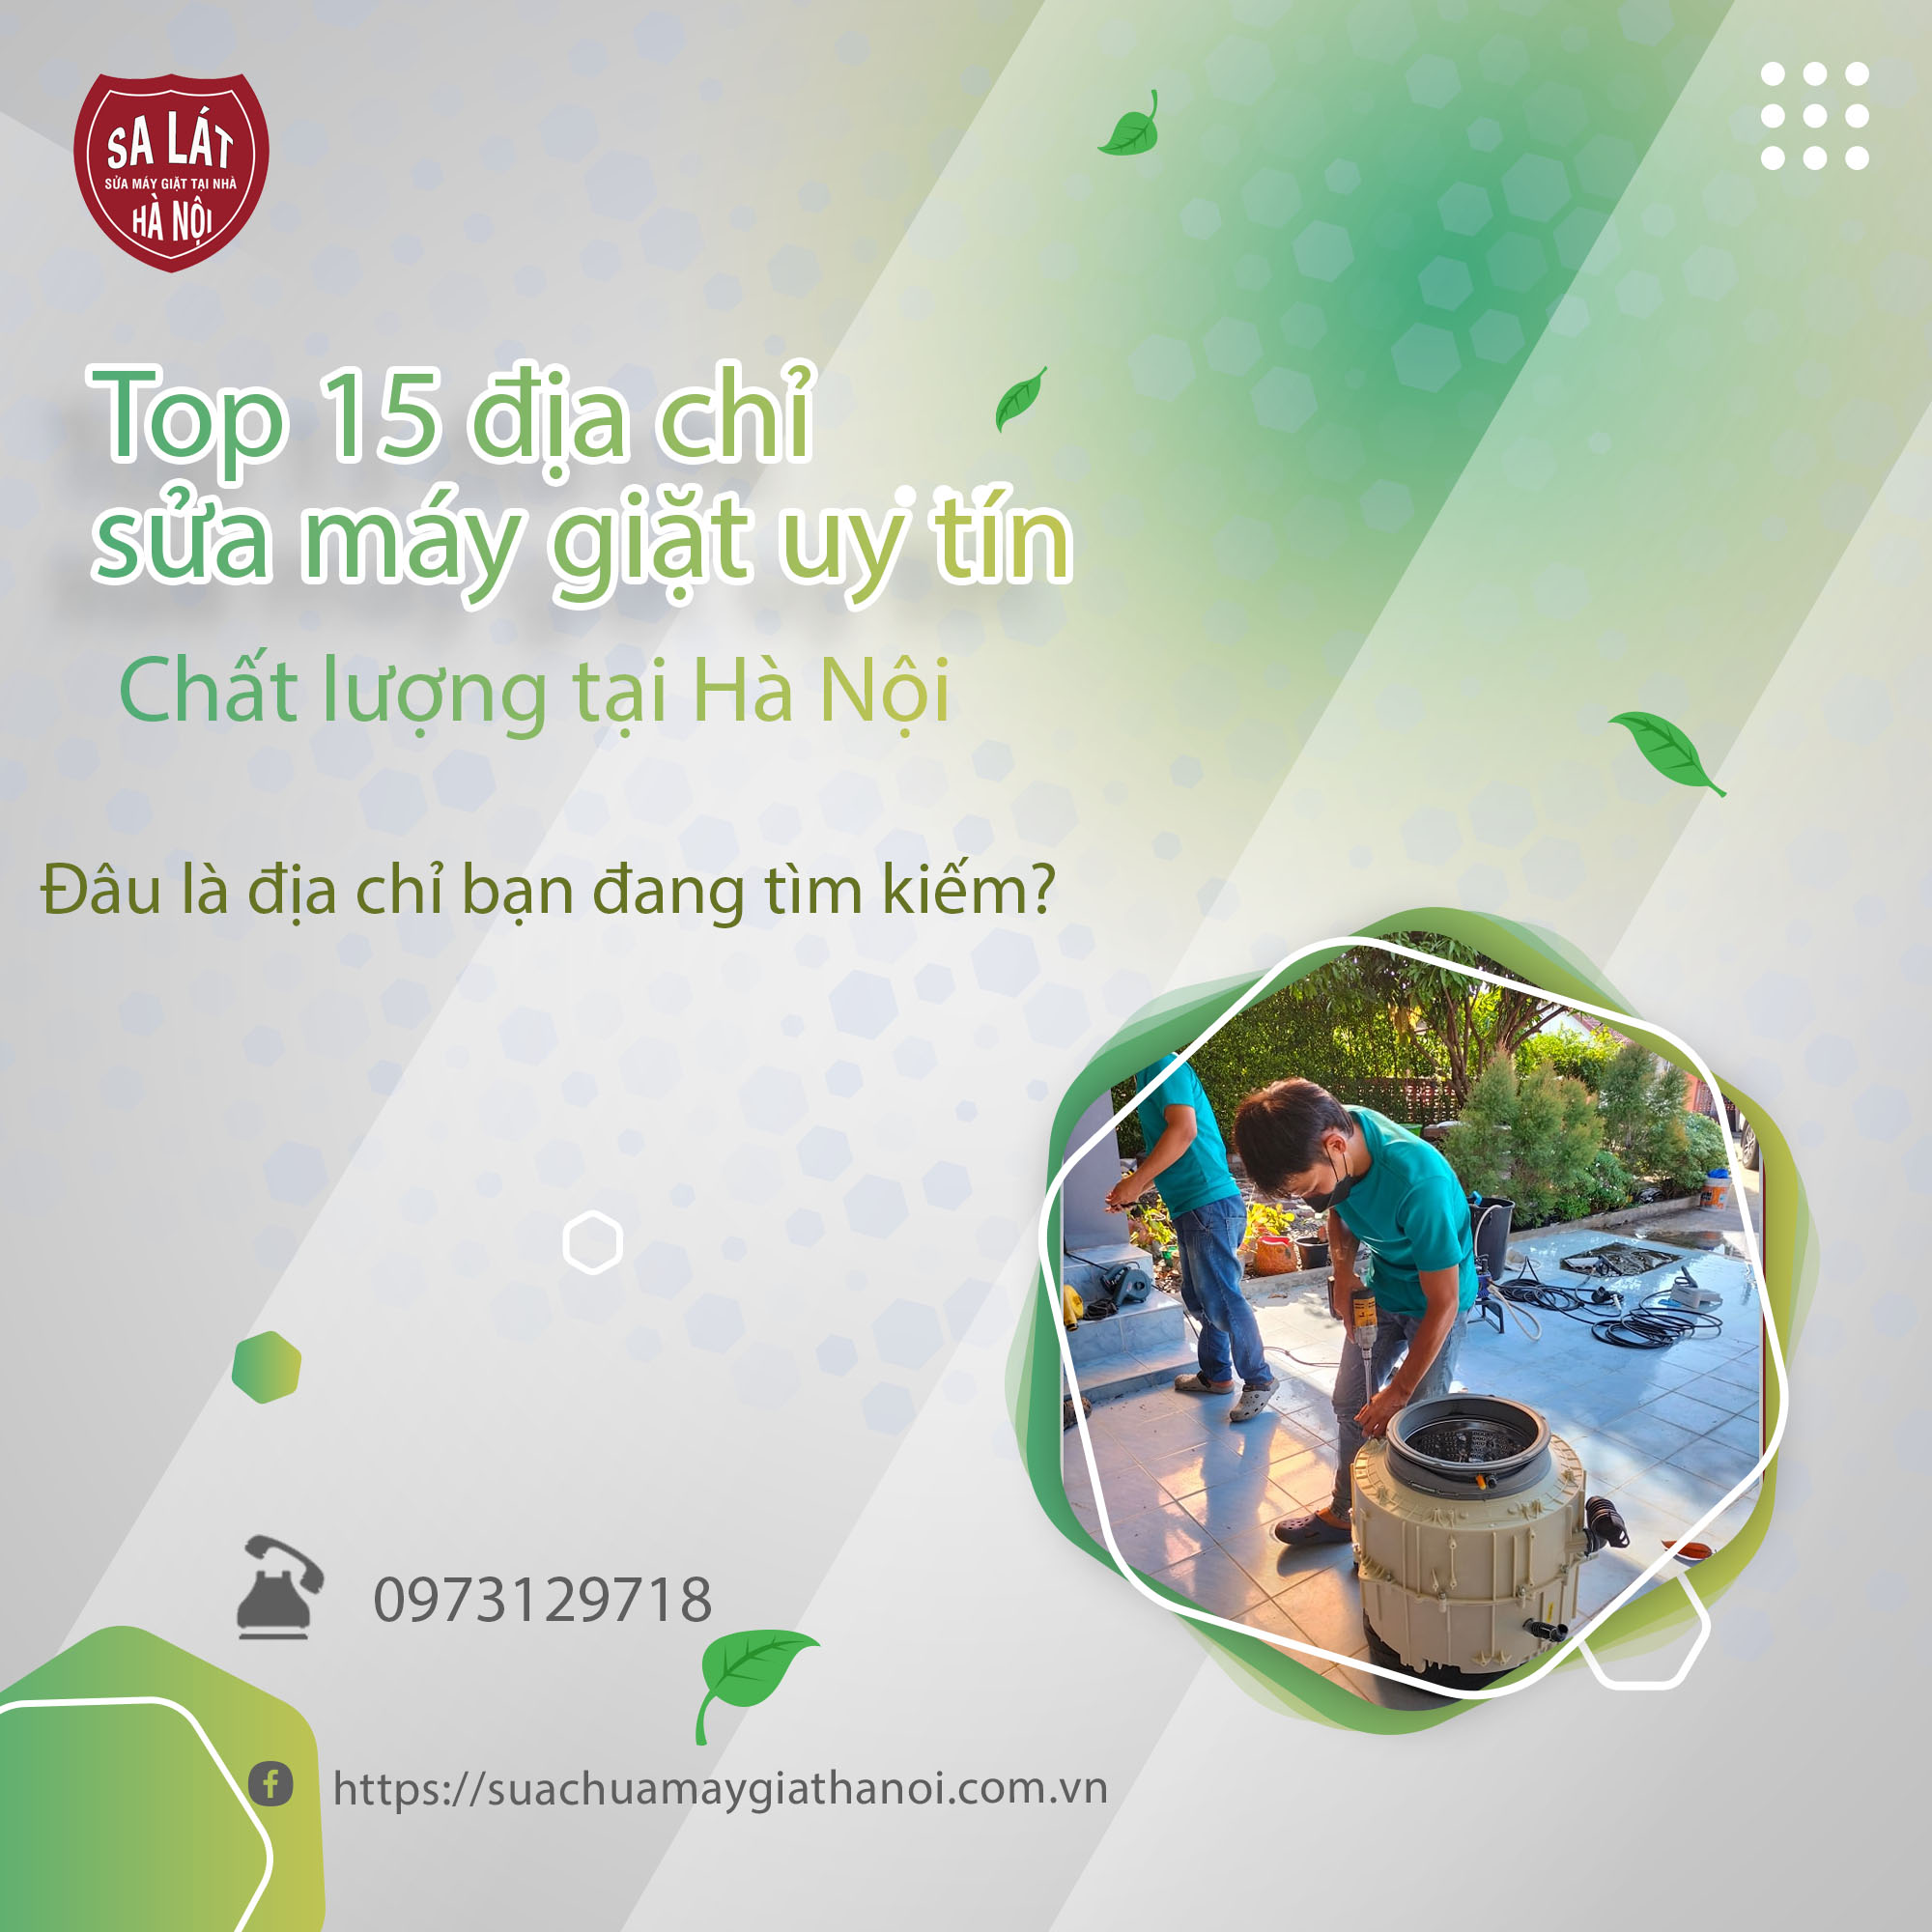 Top 15+ Địa Chỉ Sửa Máy Giặt Uy Tín tại Hà Nội: Nơi Cung Cấp Dịch Vụ Chất Lượng